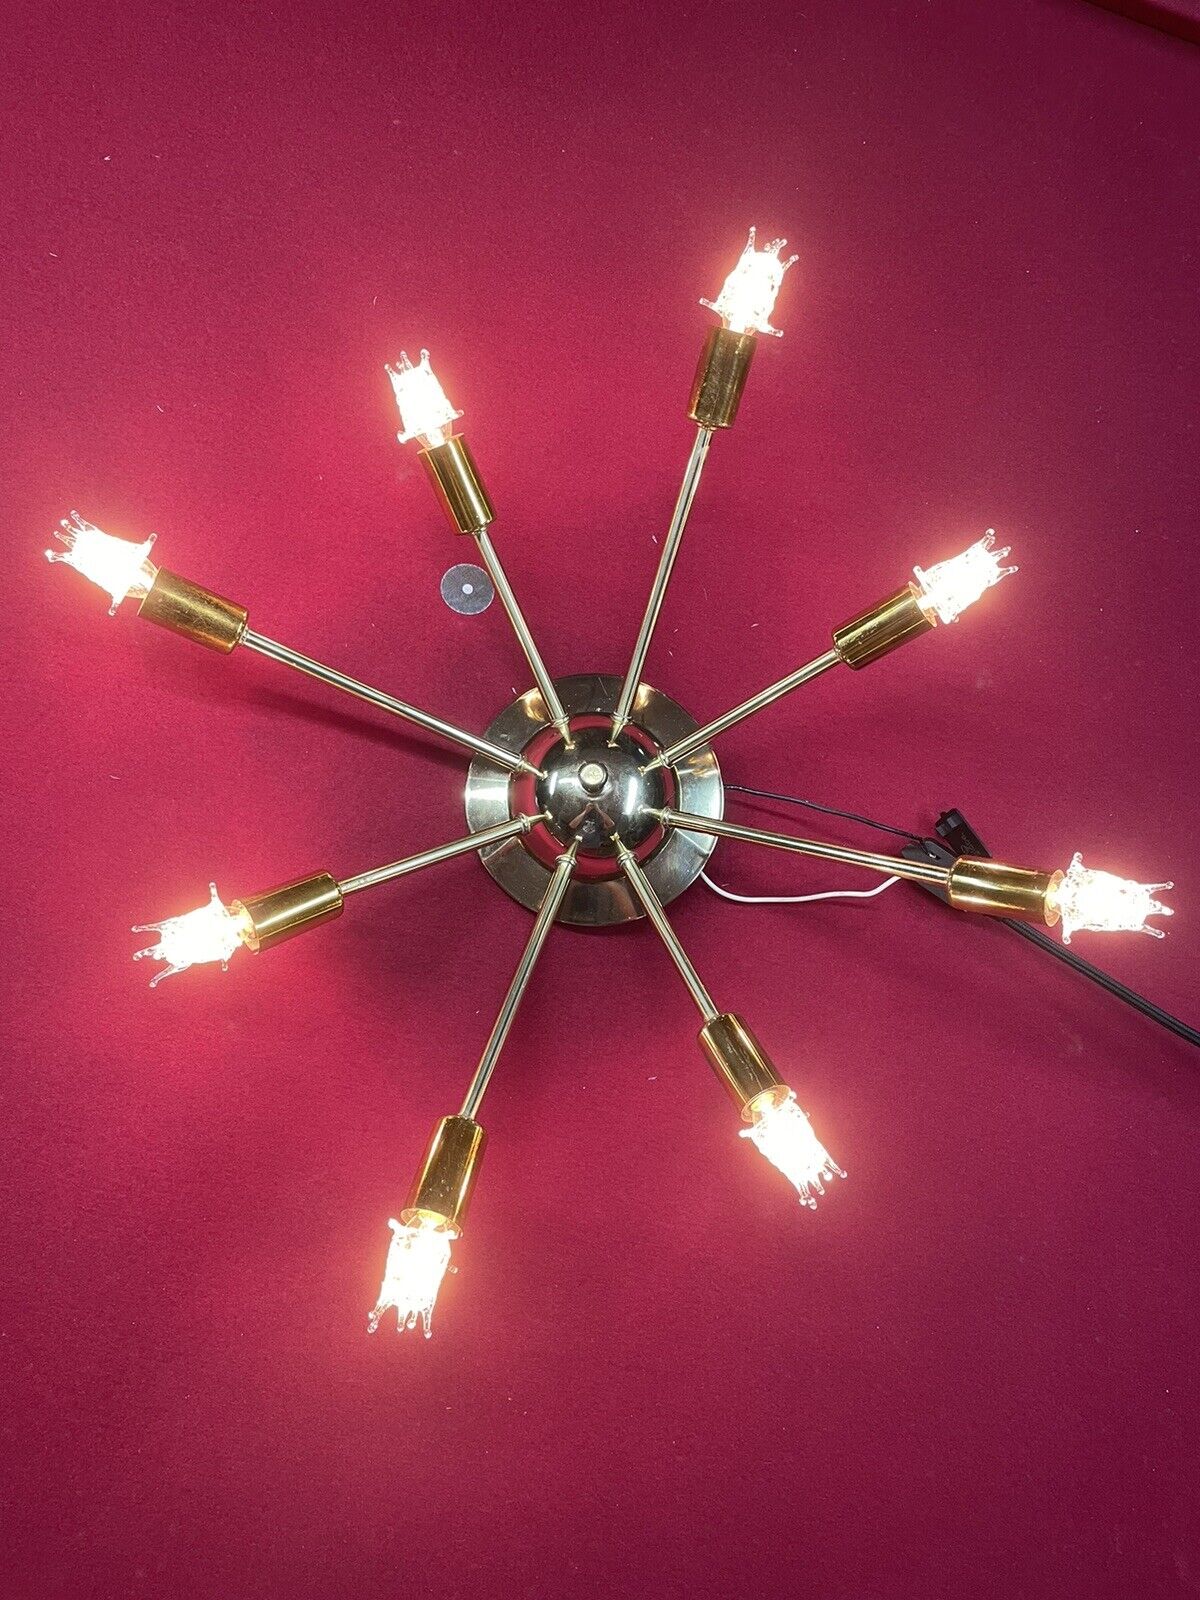 MCM Sputnik Starburst Chandelier Ceiling Light Lamp Vintage 50s By Moe Lighting